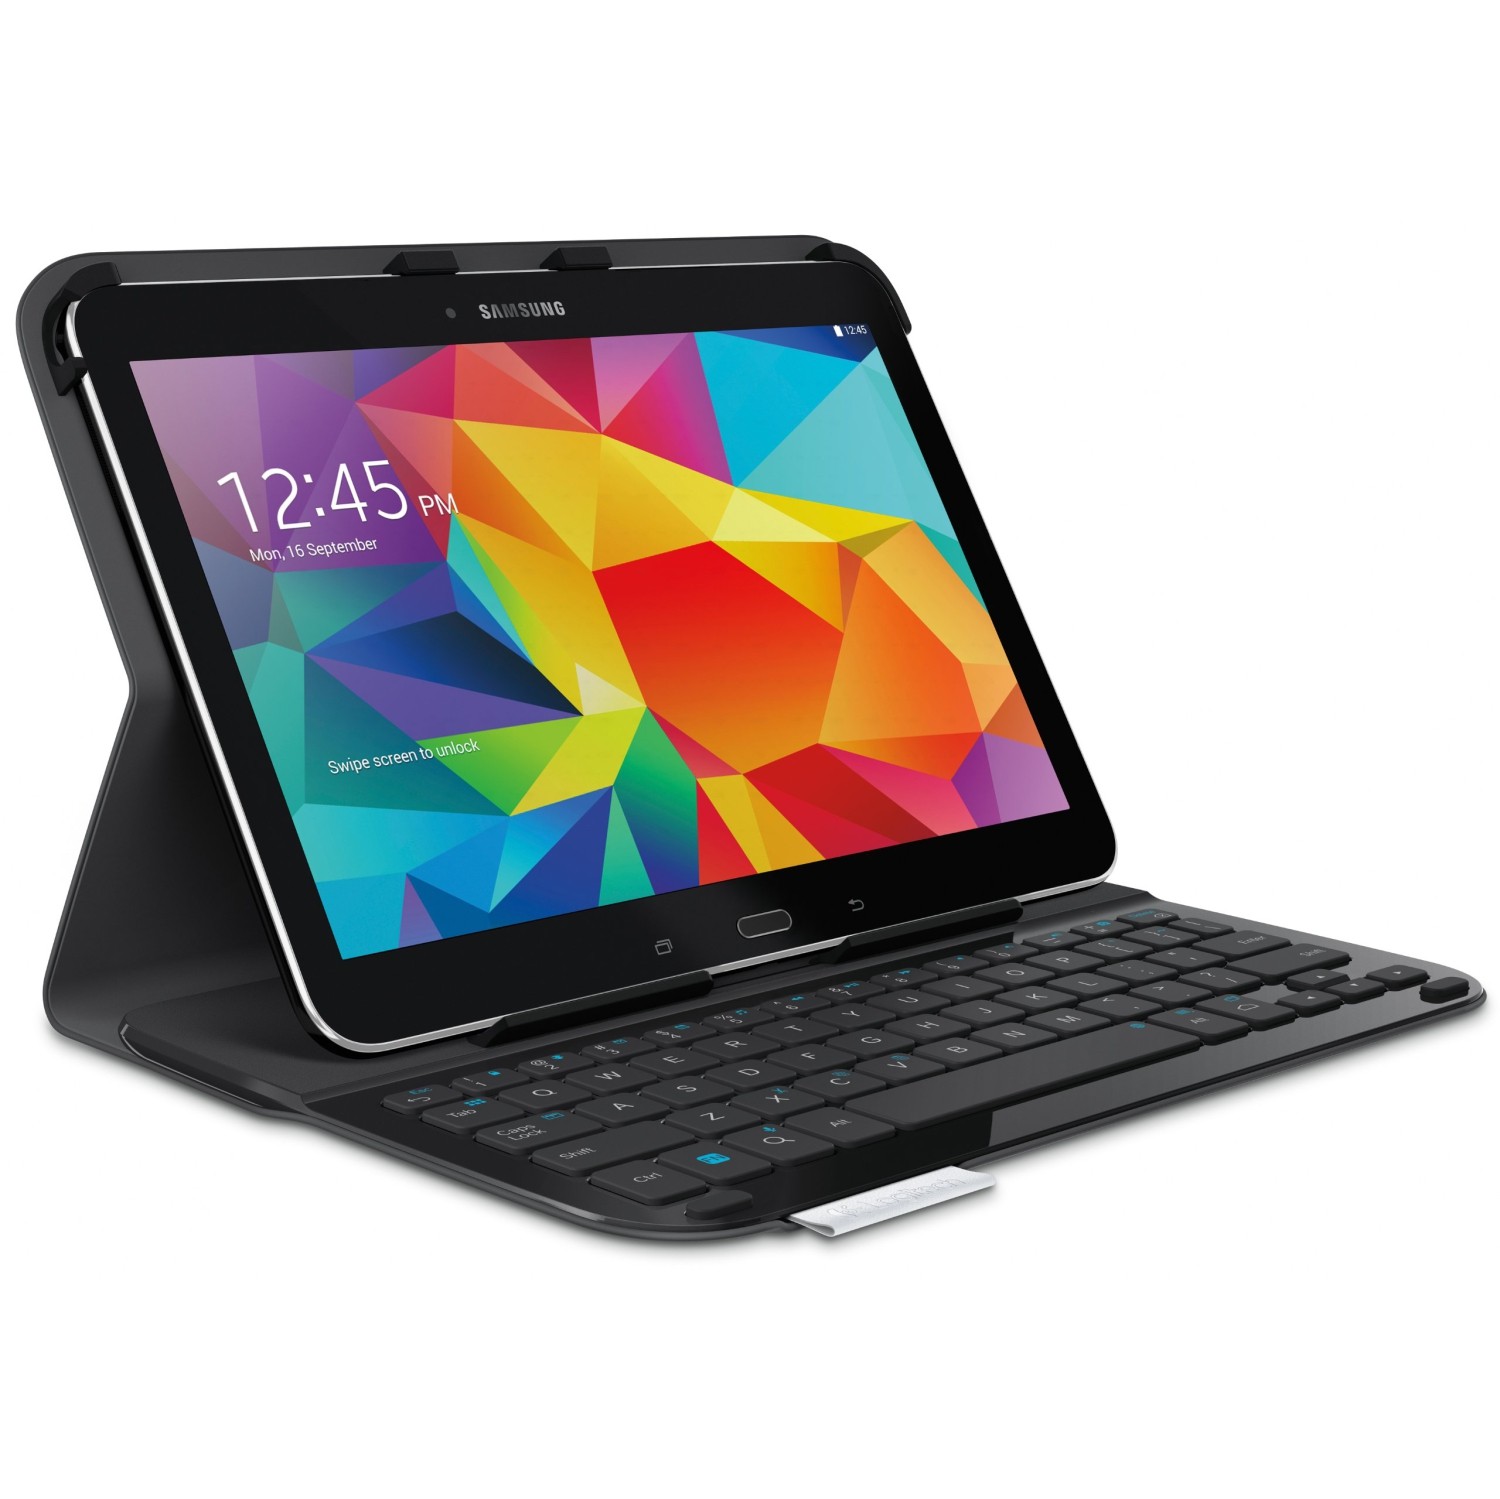 Open Box - Logitech Ultrathin Keyboard Folio for Samsung Galaxy Tab 4 10.1" (920-006386) - Carbon Blk